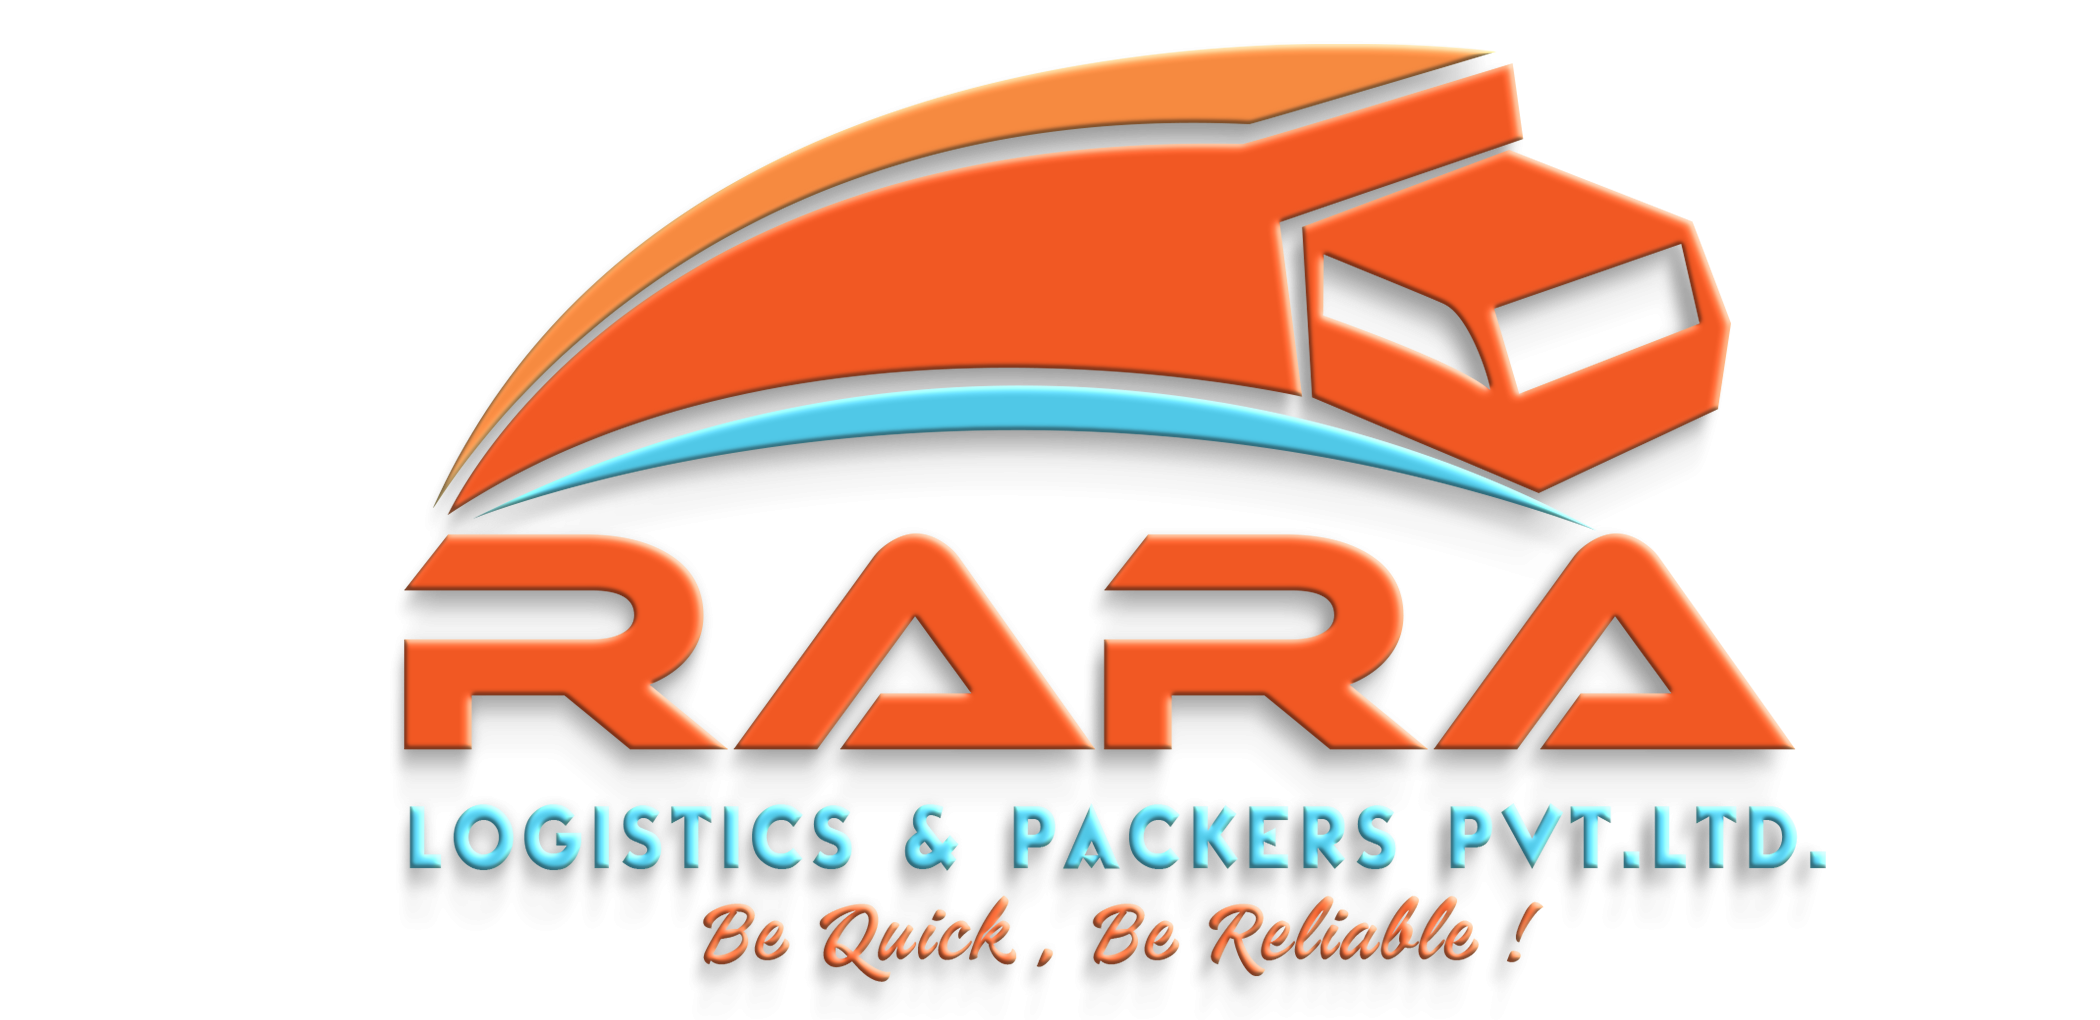 RaRa Logistics & Packers Pvt. Ltd.